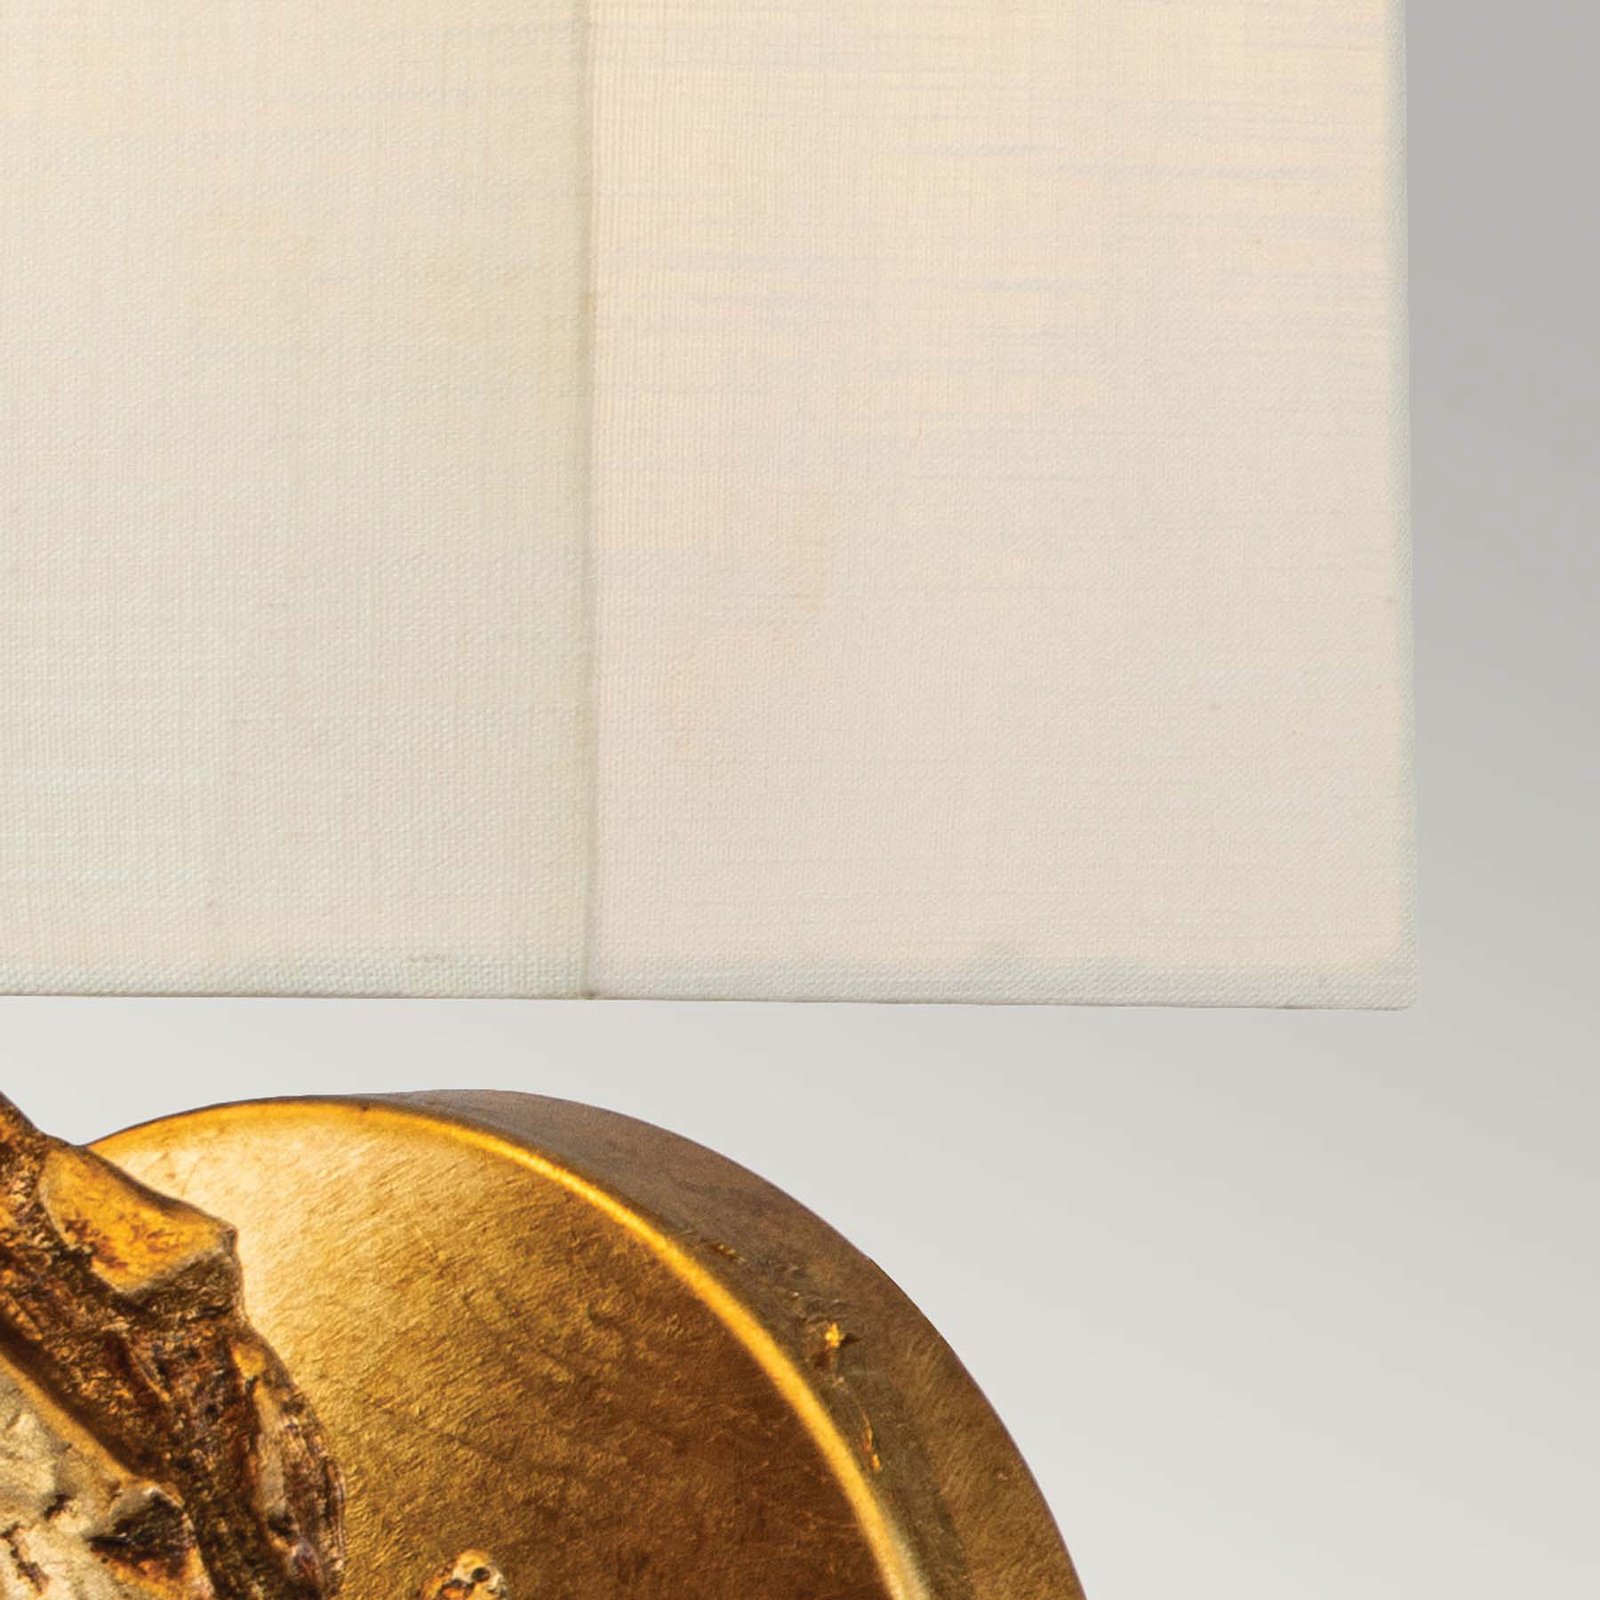 Duży kinkiet Swirl z lnianym kloszem, wykończony złotą folią